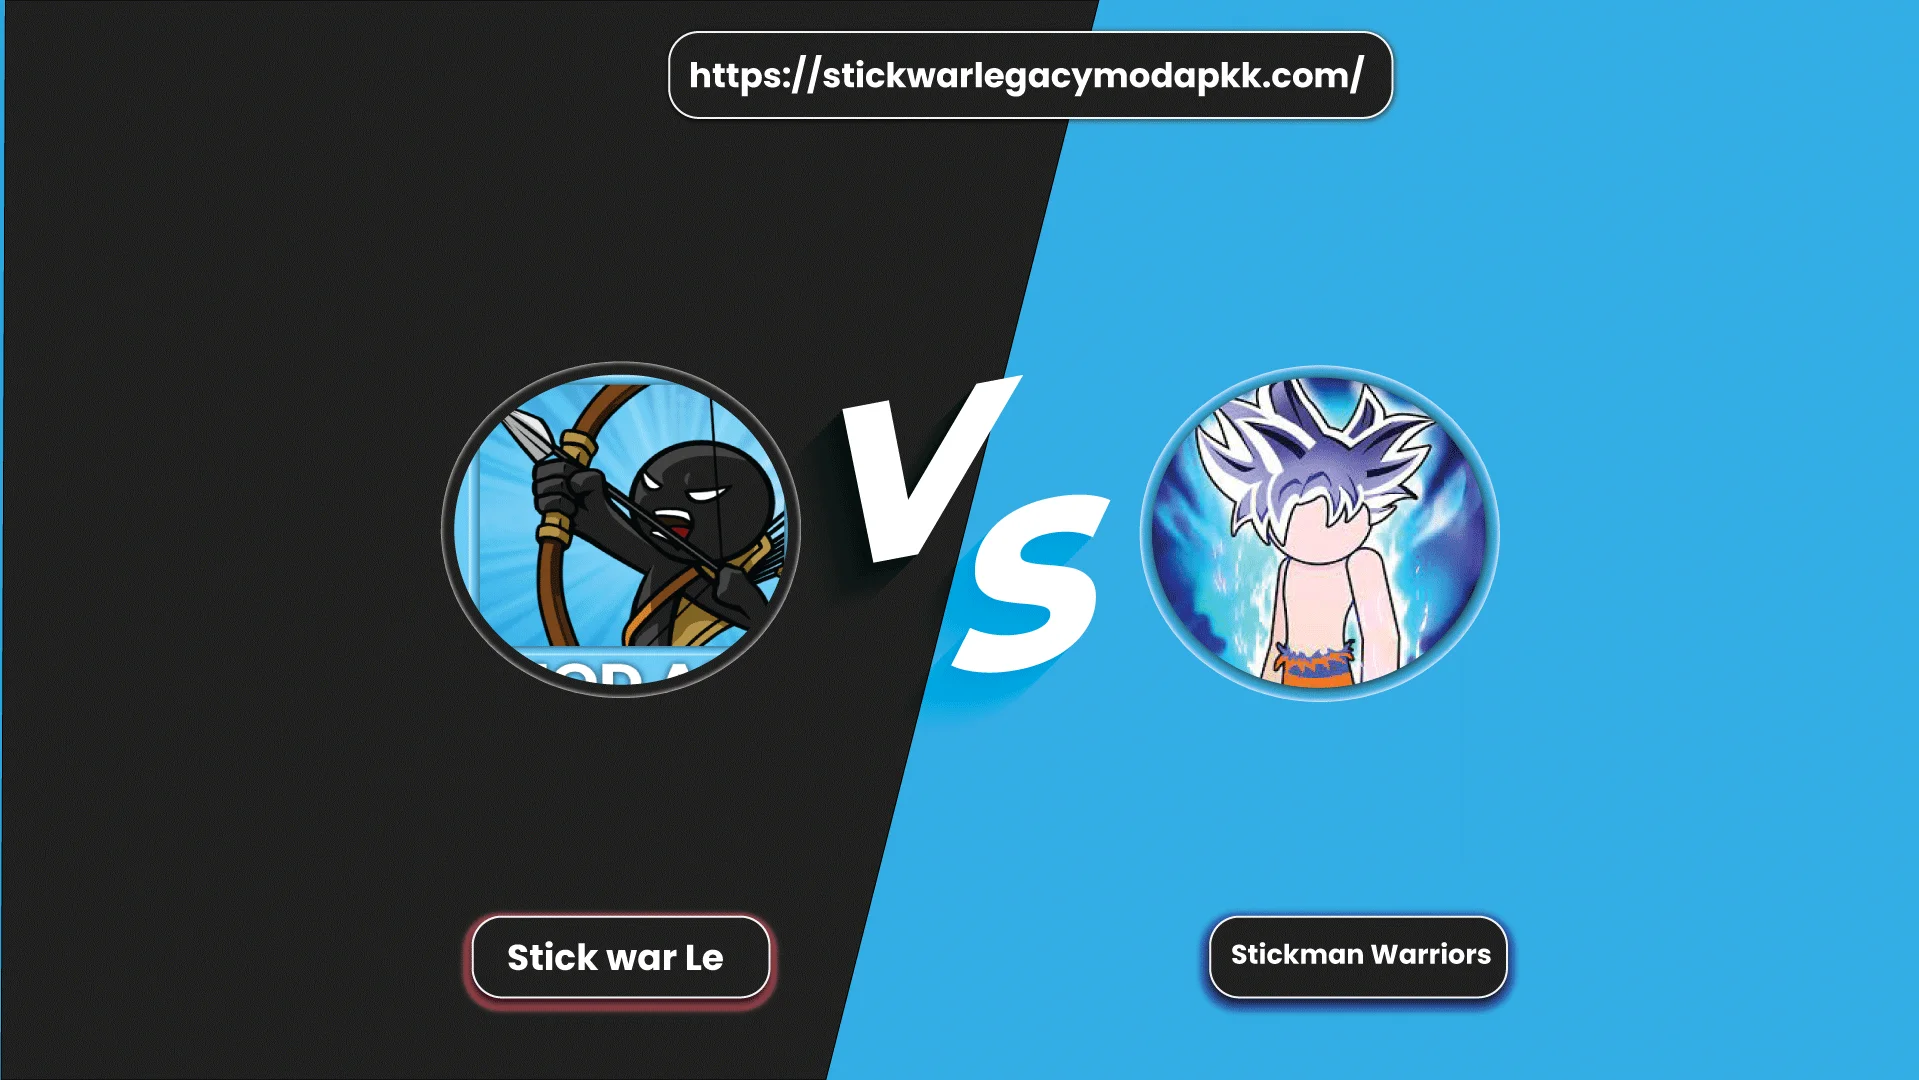 Stick war legacy vs Stickman Warriors